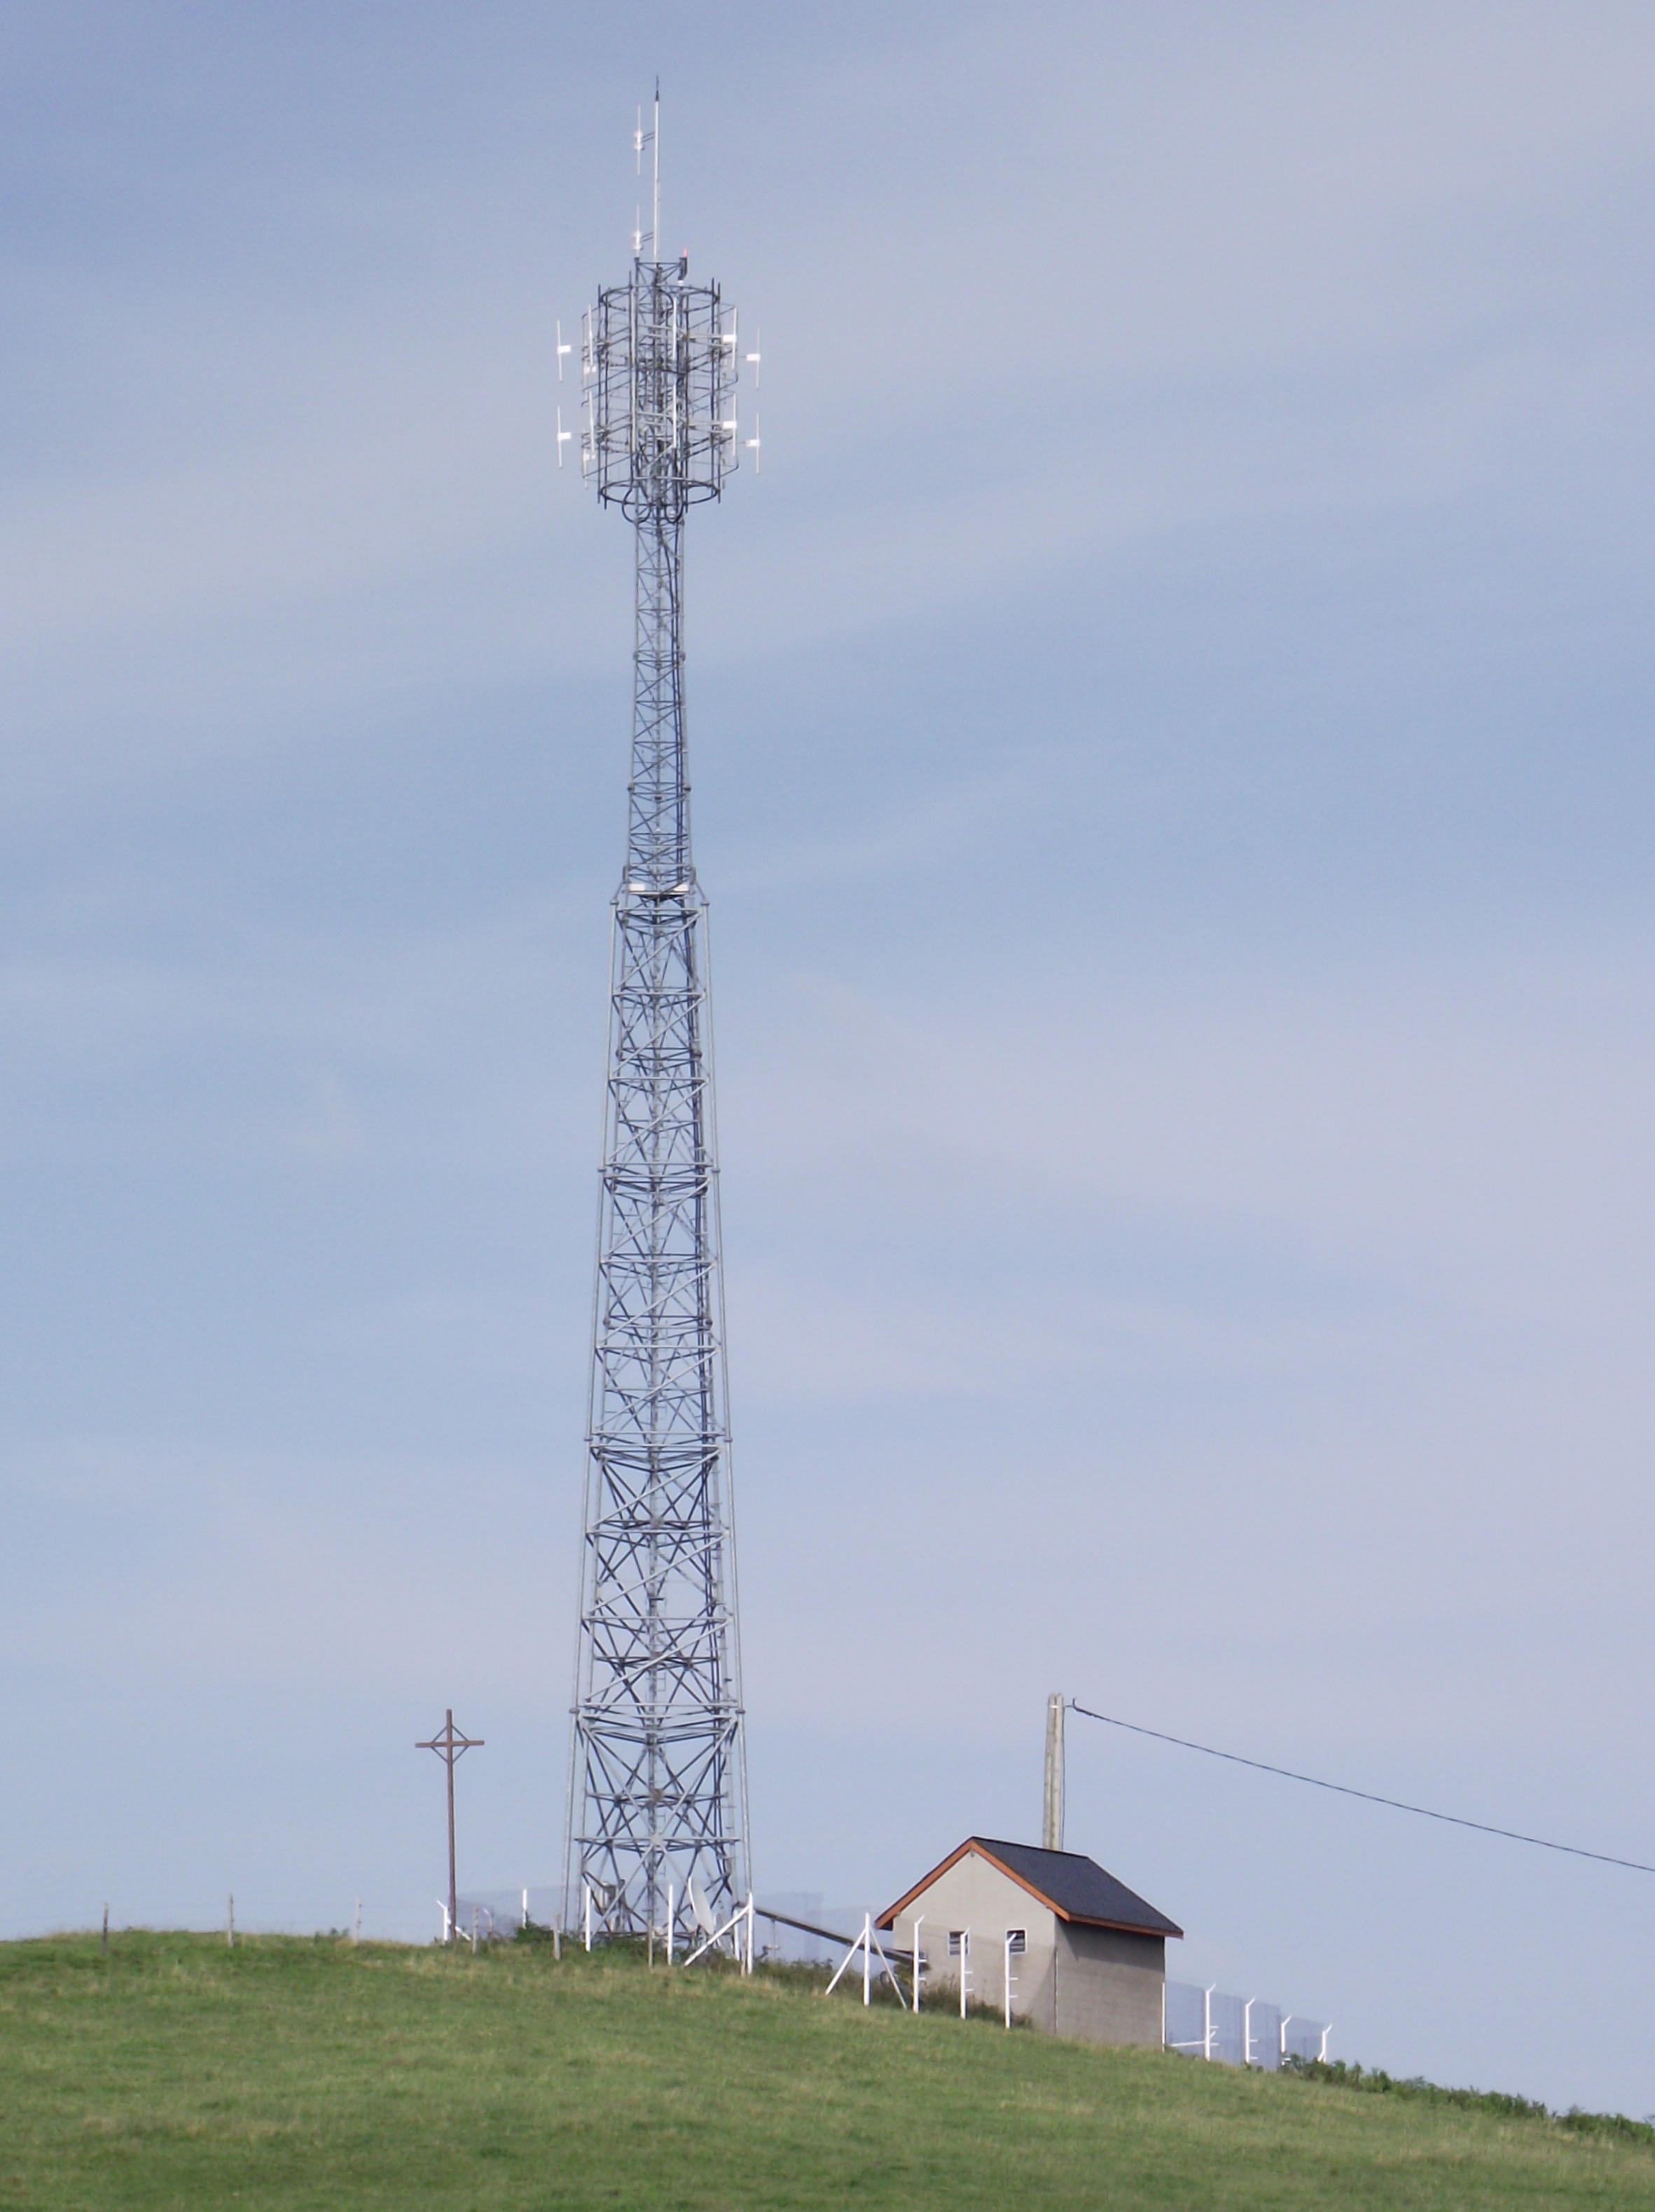 Les différents types d'antennes radio –